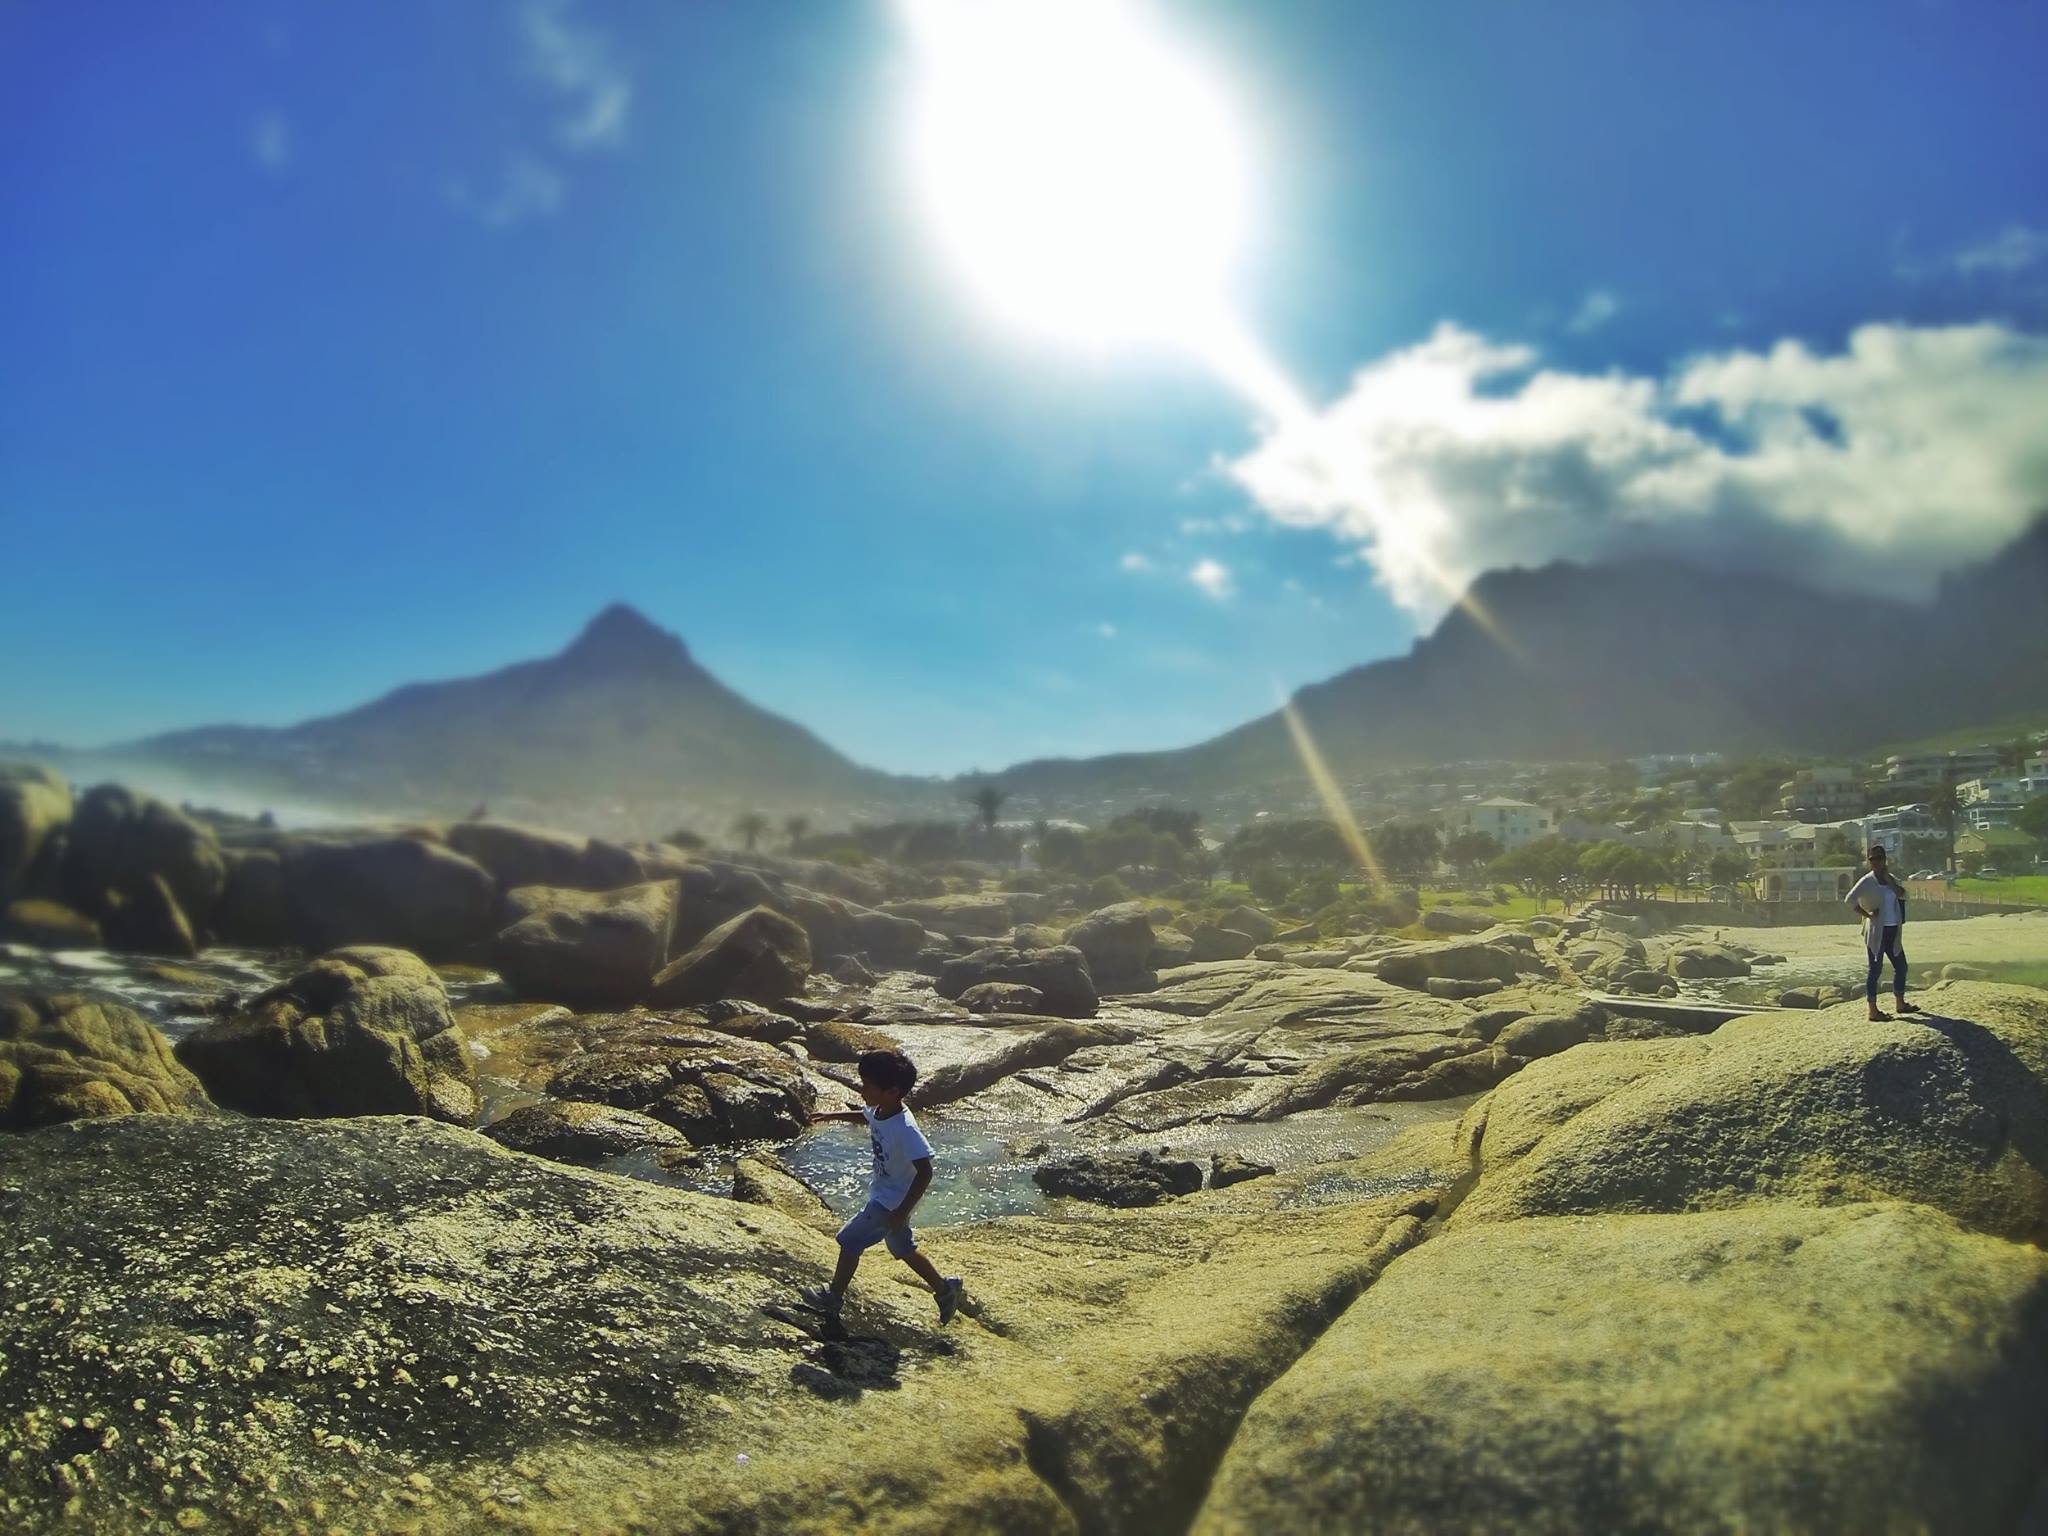 Camps Bay, África do Sul – Registro do fotógrafo colaborador Thierry Rossi — em África do Sul.